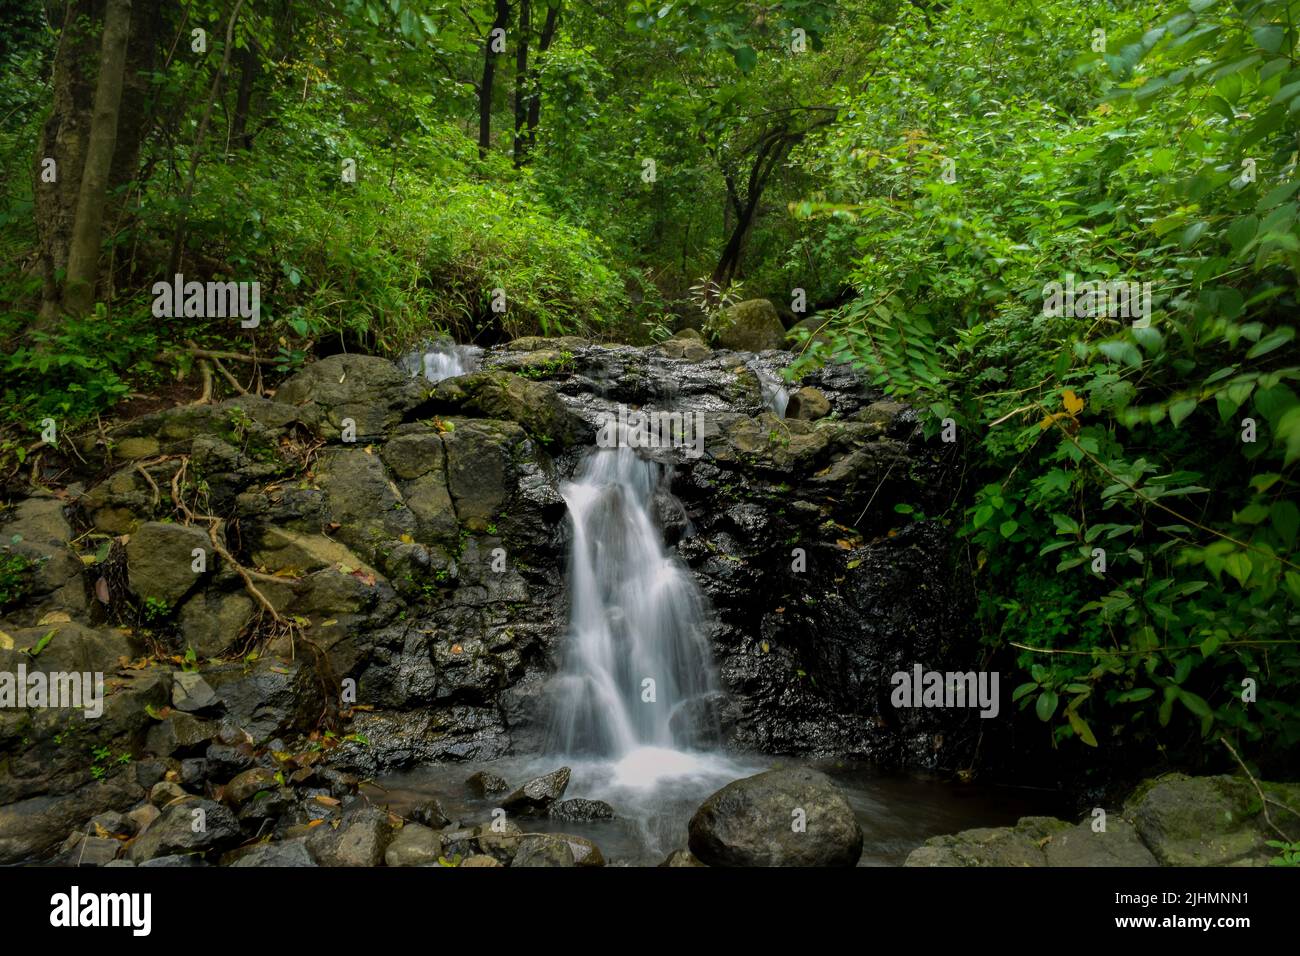 Piccolo torrente d'acqua proveniente dalla collina e che scorre sulle rocce durante la stagione delle piogge monsoniche con il verde tutto intorno. Foto Stock